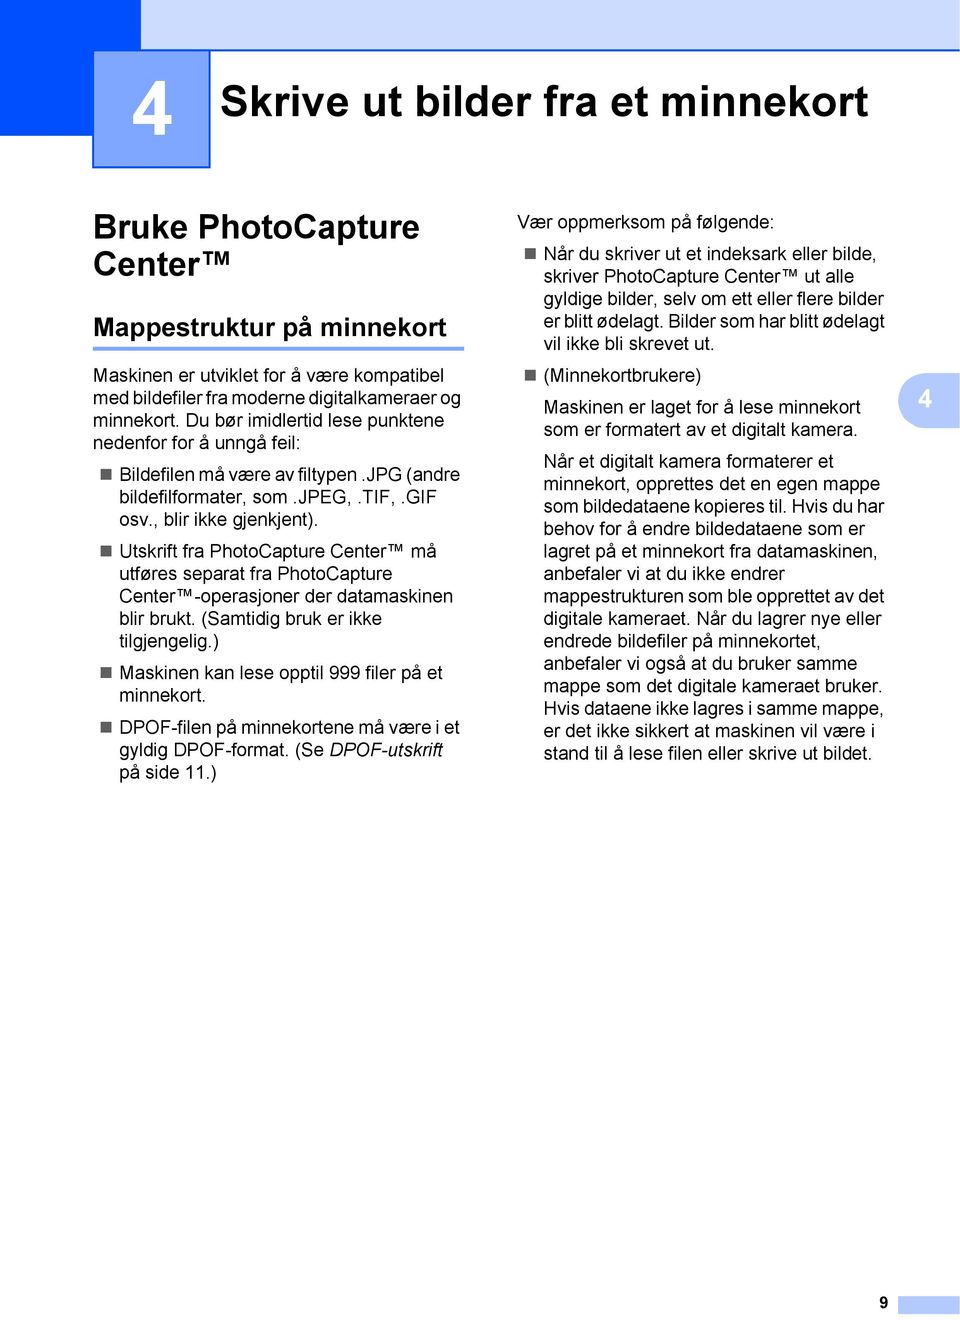 Utskrift fra PhotoCapture Center må utføres separat fra PhotoCapture Center -operasjoner der datamaskinen blir brukt. (Samtidig bruk er ikke tilgjengelig.